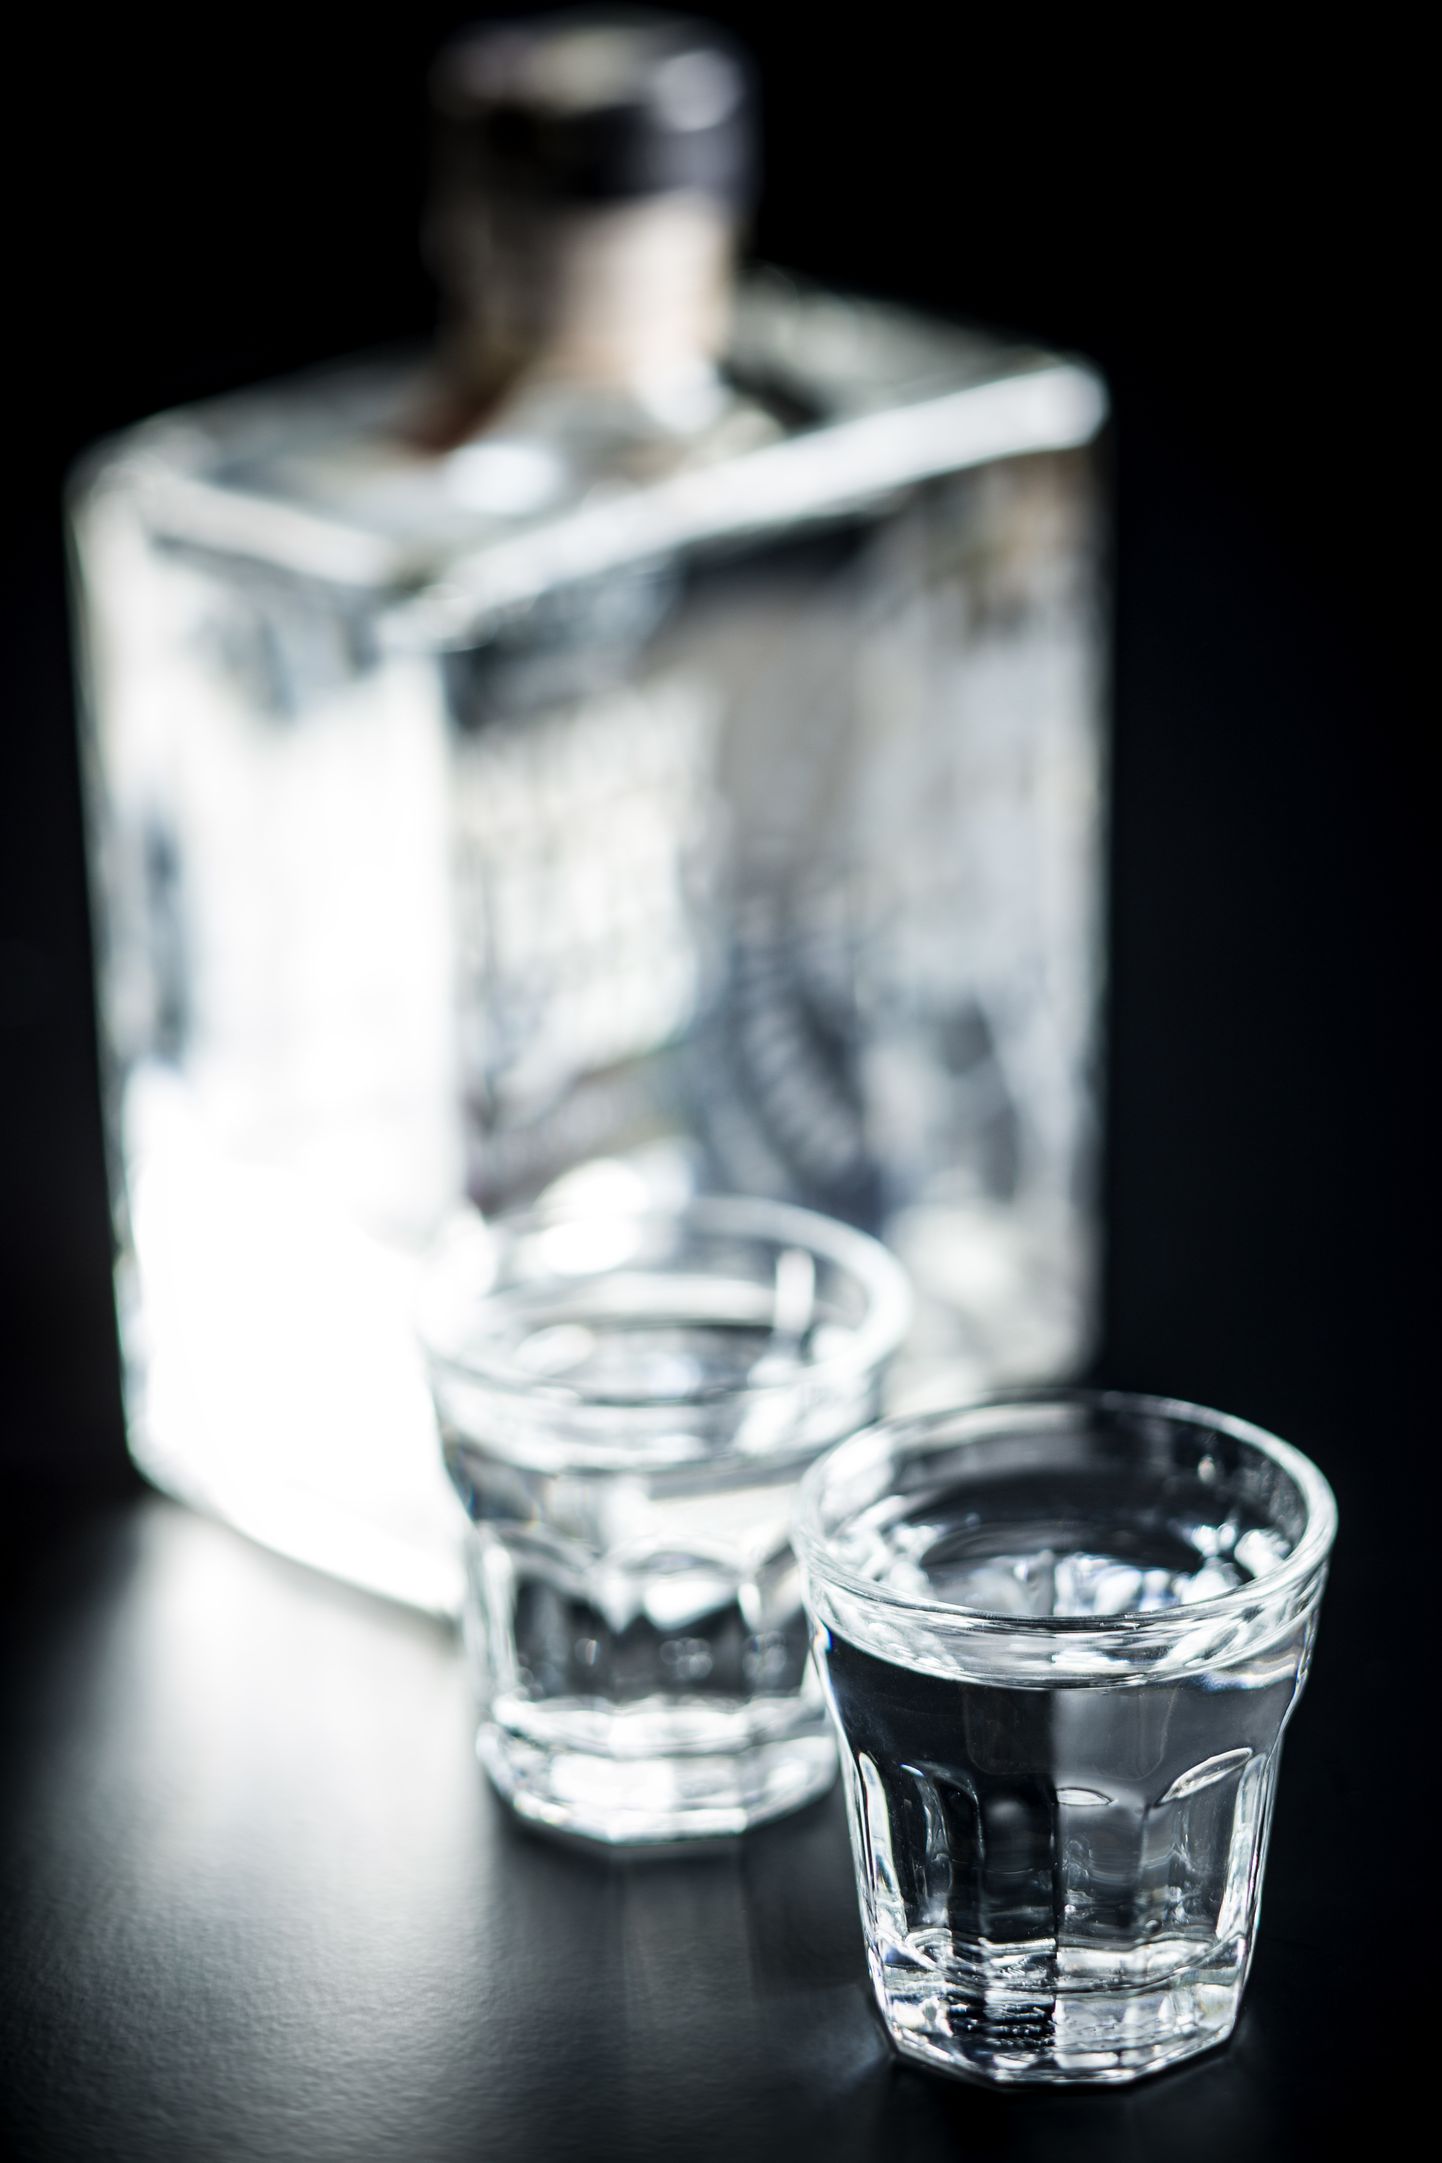 Vodka in shot glass.